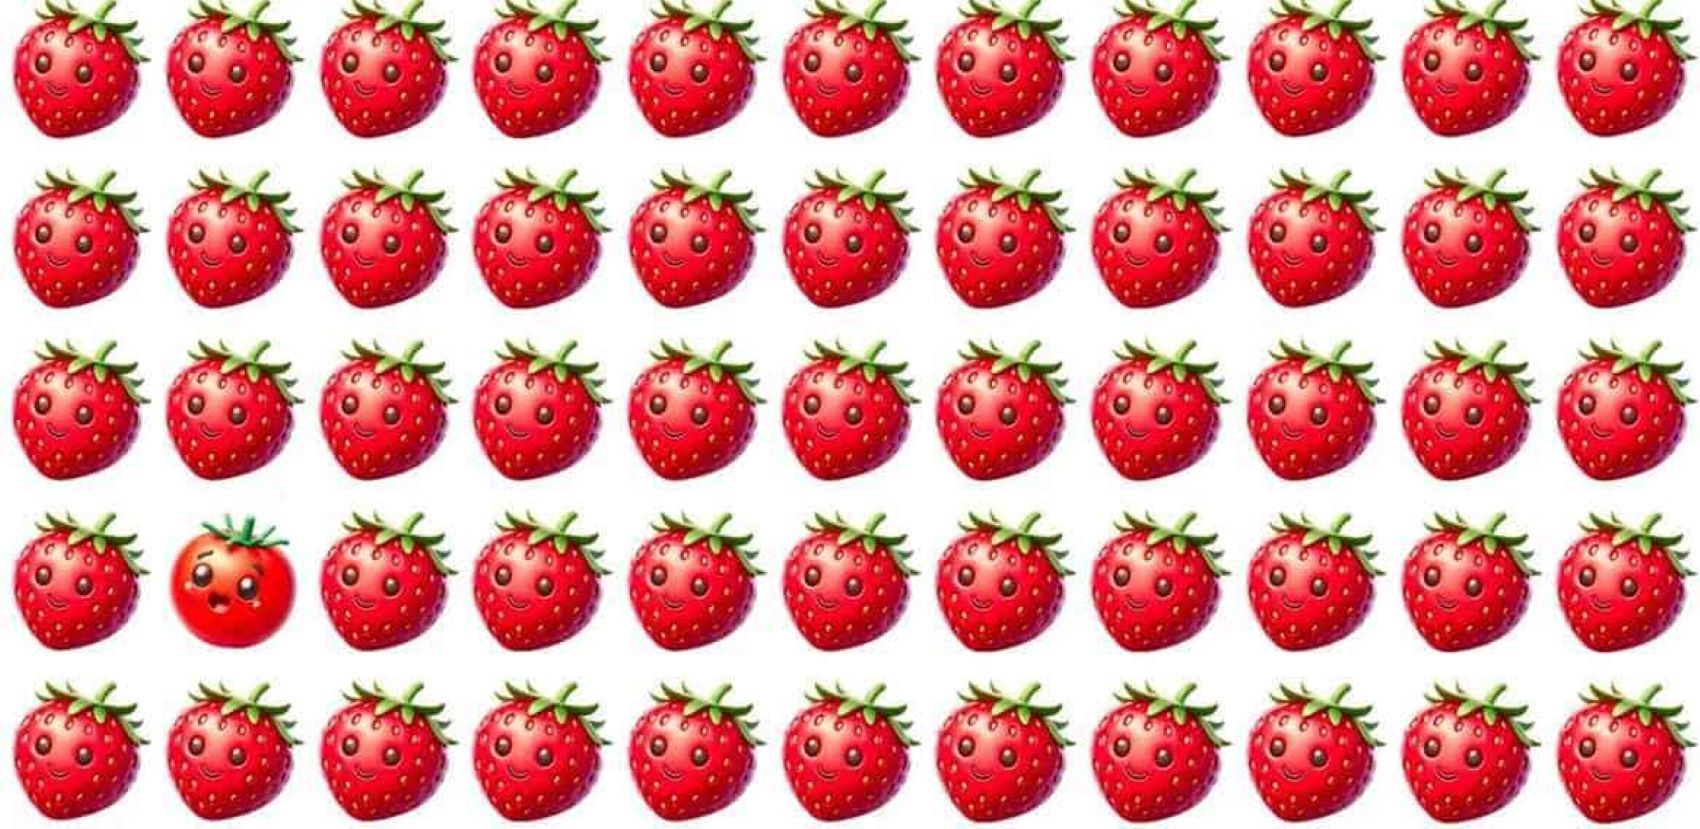 Tes Ilusi Optik: Bisakah Kamu Menemukan Tomat Diantara Stroberi Ini dalam Waktu 4 Detik?